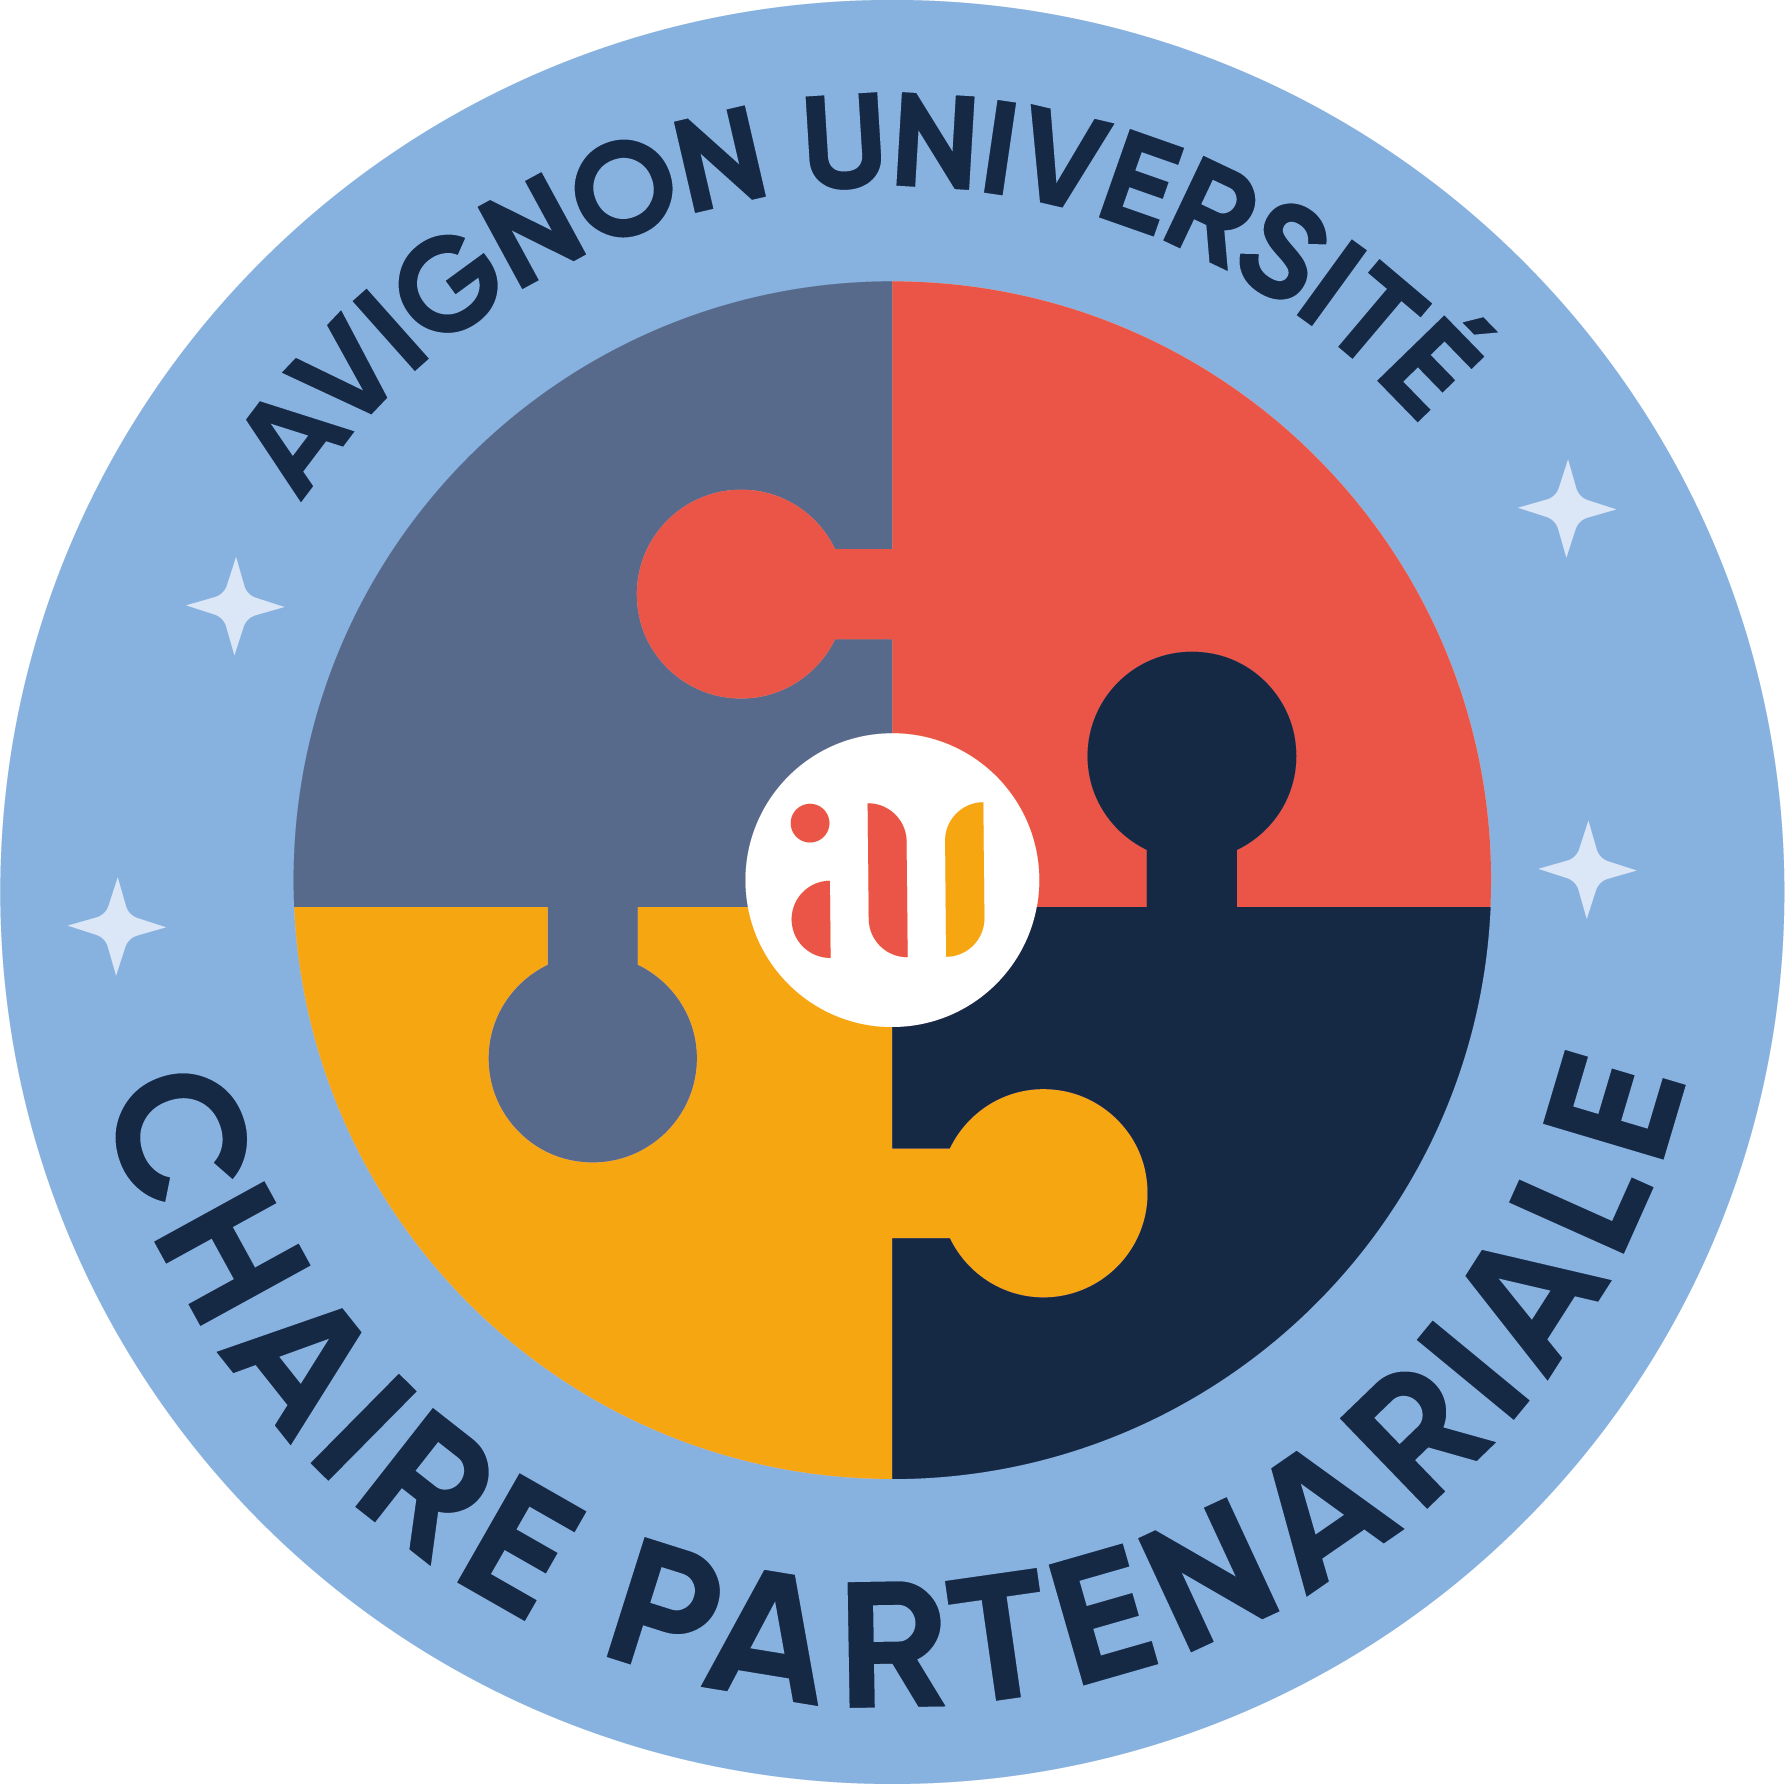 Logo de la chaire partenariale d’Avignon Université